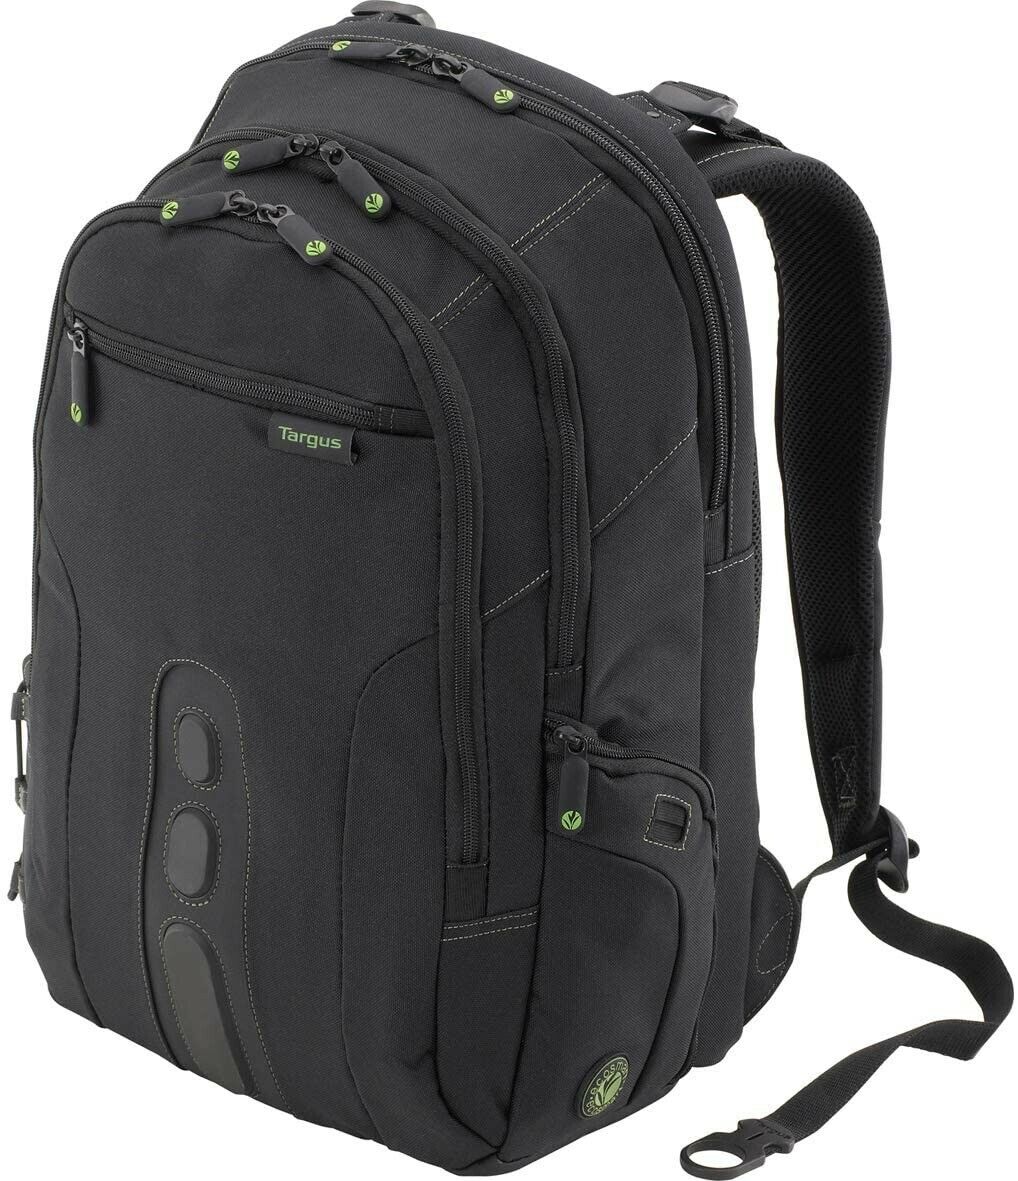 Targus Spruce EcoSmart Black 15.6 Backpack - TBB013US-71 (new in plastic)